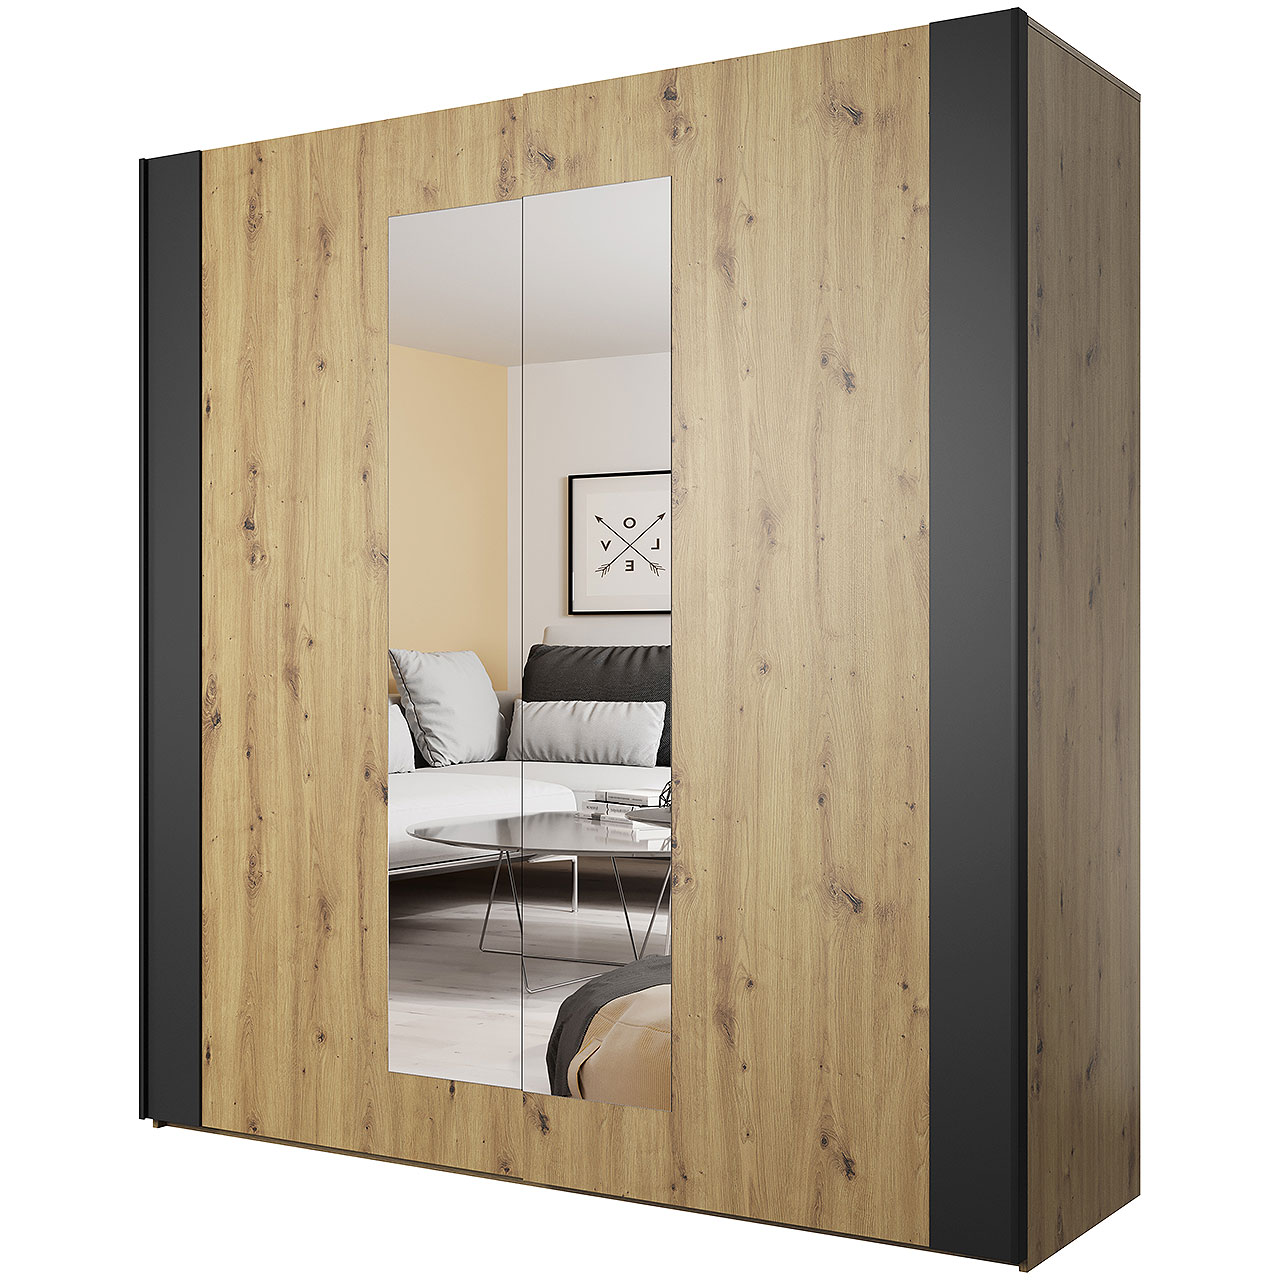 Sliding wardrobe with mirror SIGMA SG18 artisan oak / black